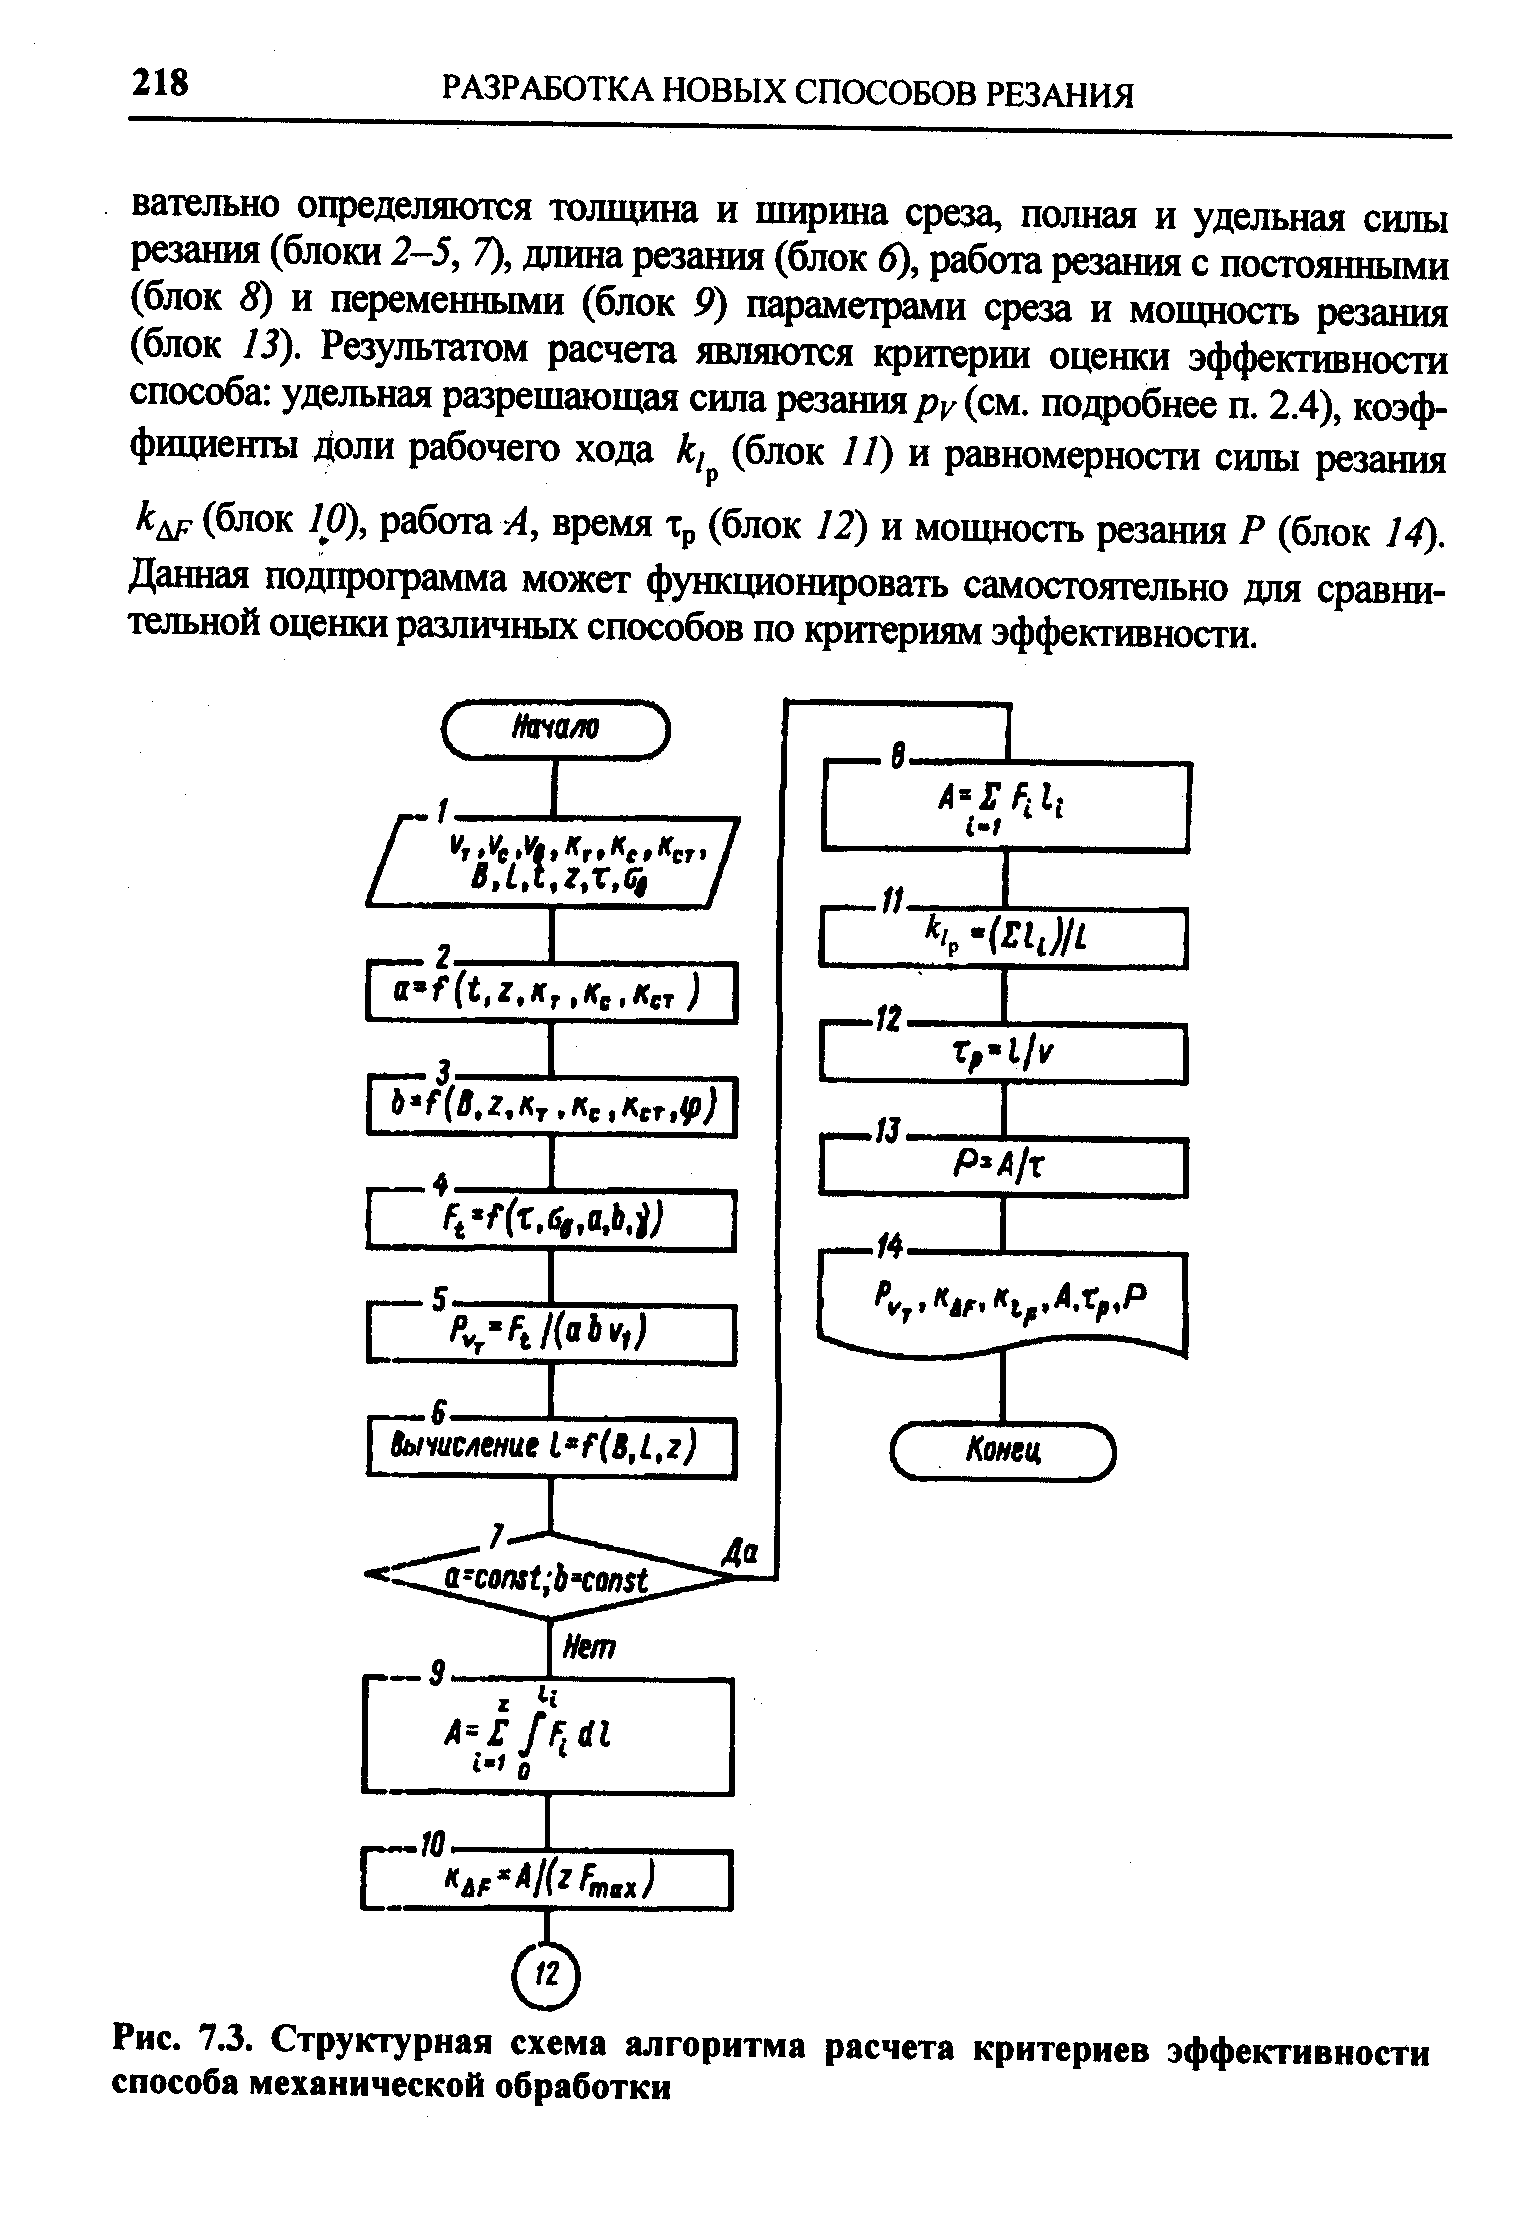 Рис. 7.3. Структурная схема алгоритма расчета критериев эффективности способа механической обработки
